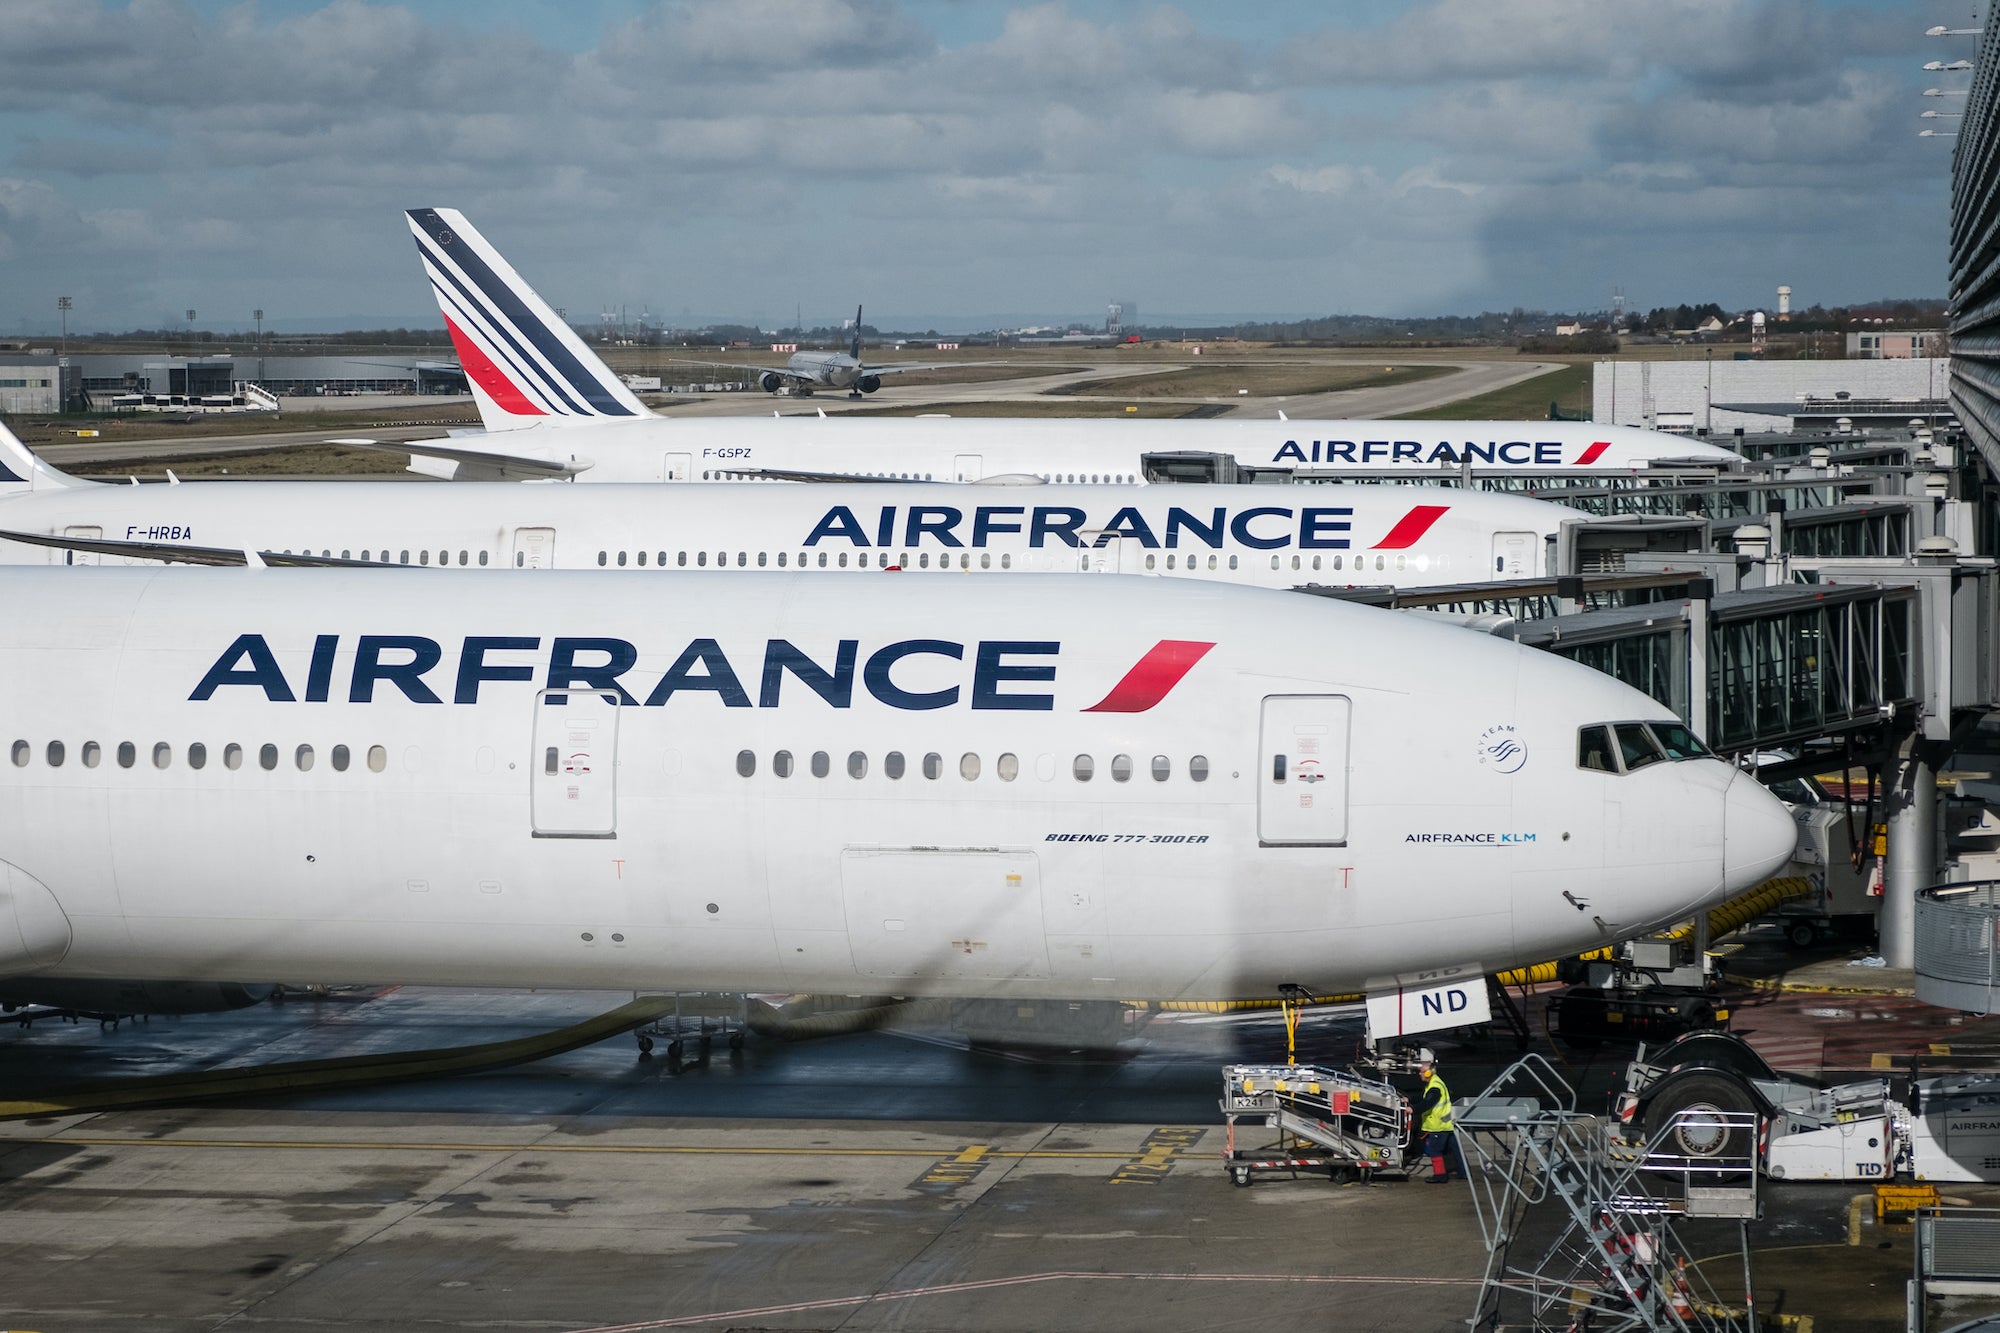 Air France 777's at The Gate at CDG